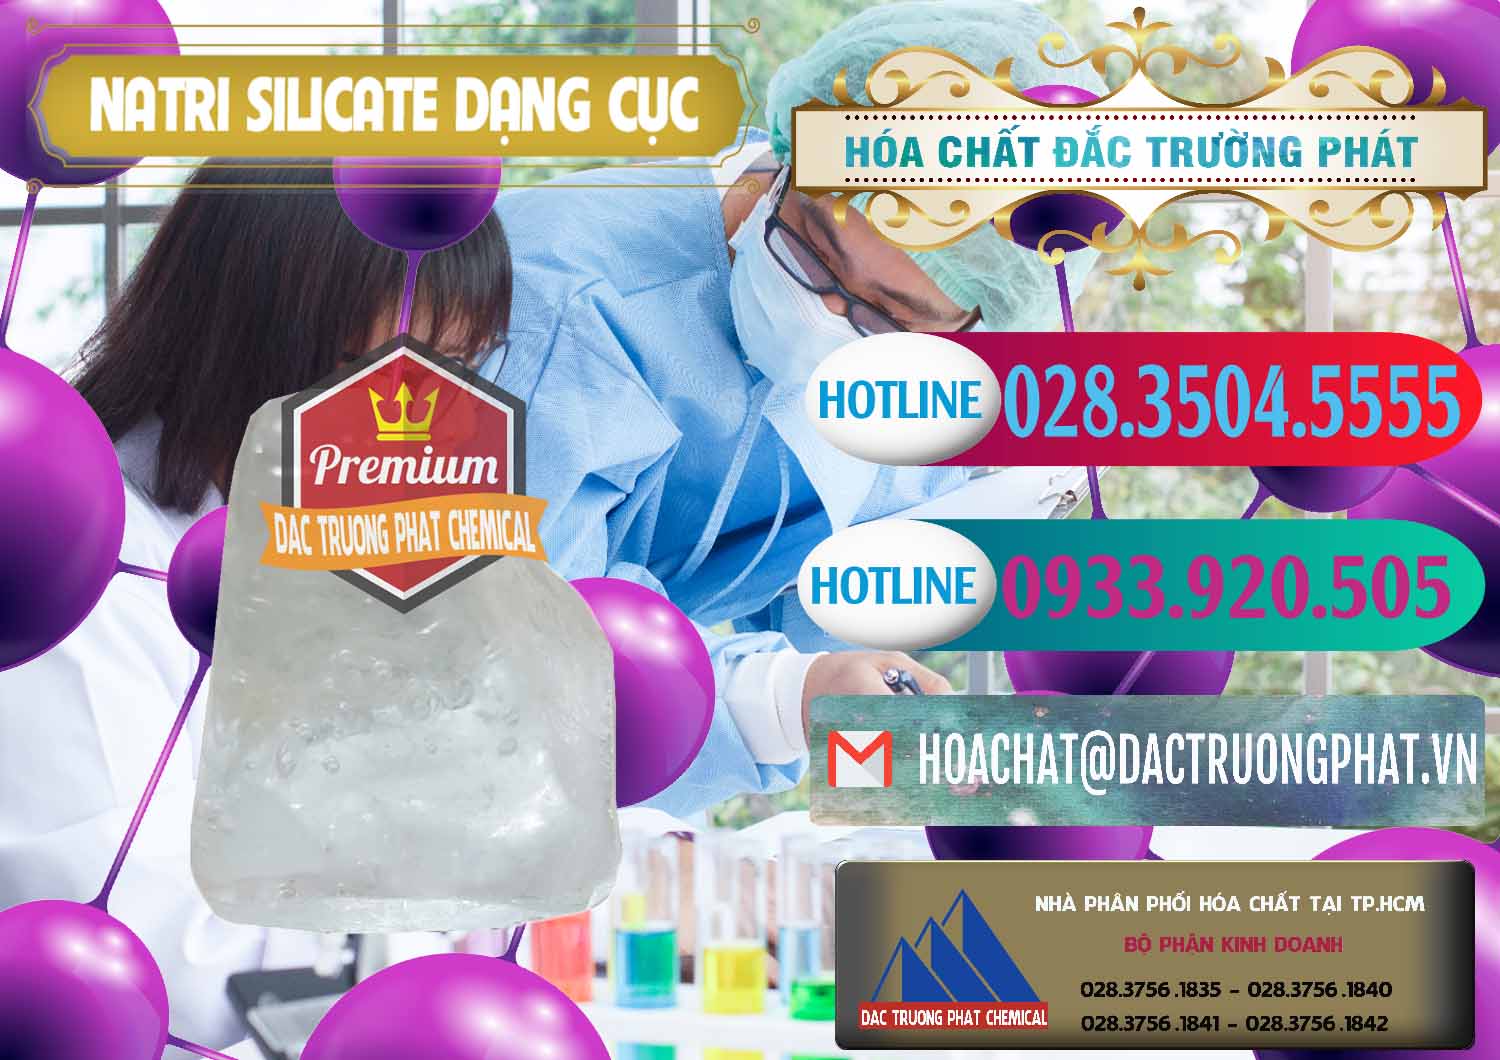 Nơi cung cấp & bán Natri Silicate - Na2SiO3 - Keo Silicate Dạng Cục Ấn Độ India - 0382 - Nơi cung cấp _ nhập khẩu hóa chất tại TP.HCM - truongphat.vn